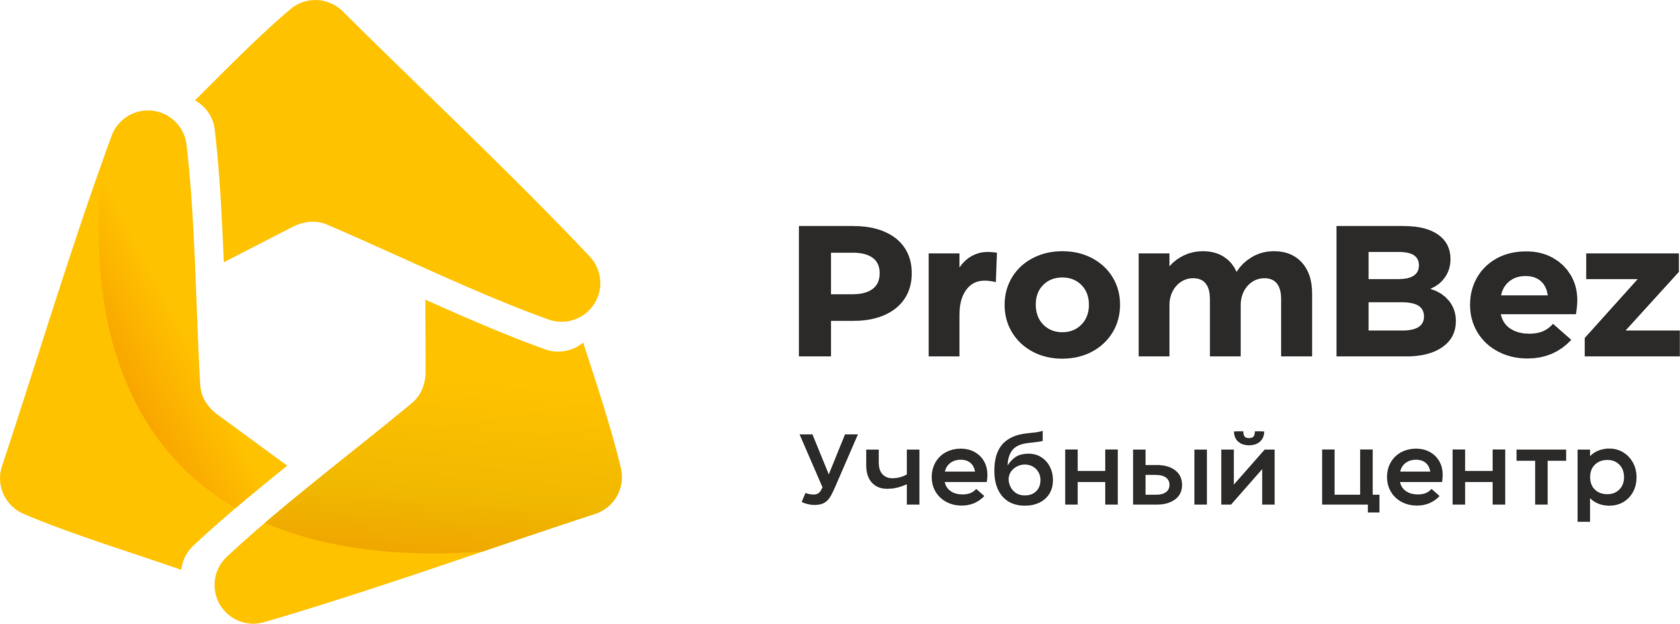 Https prombez org. Пром без. Prombez программа. Prombez Екатеринбург. ПРОМБЕЗ под ключ.